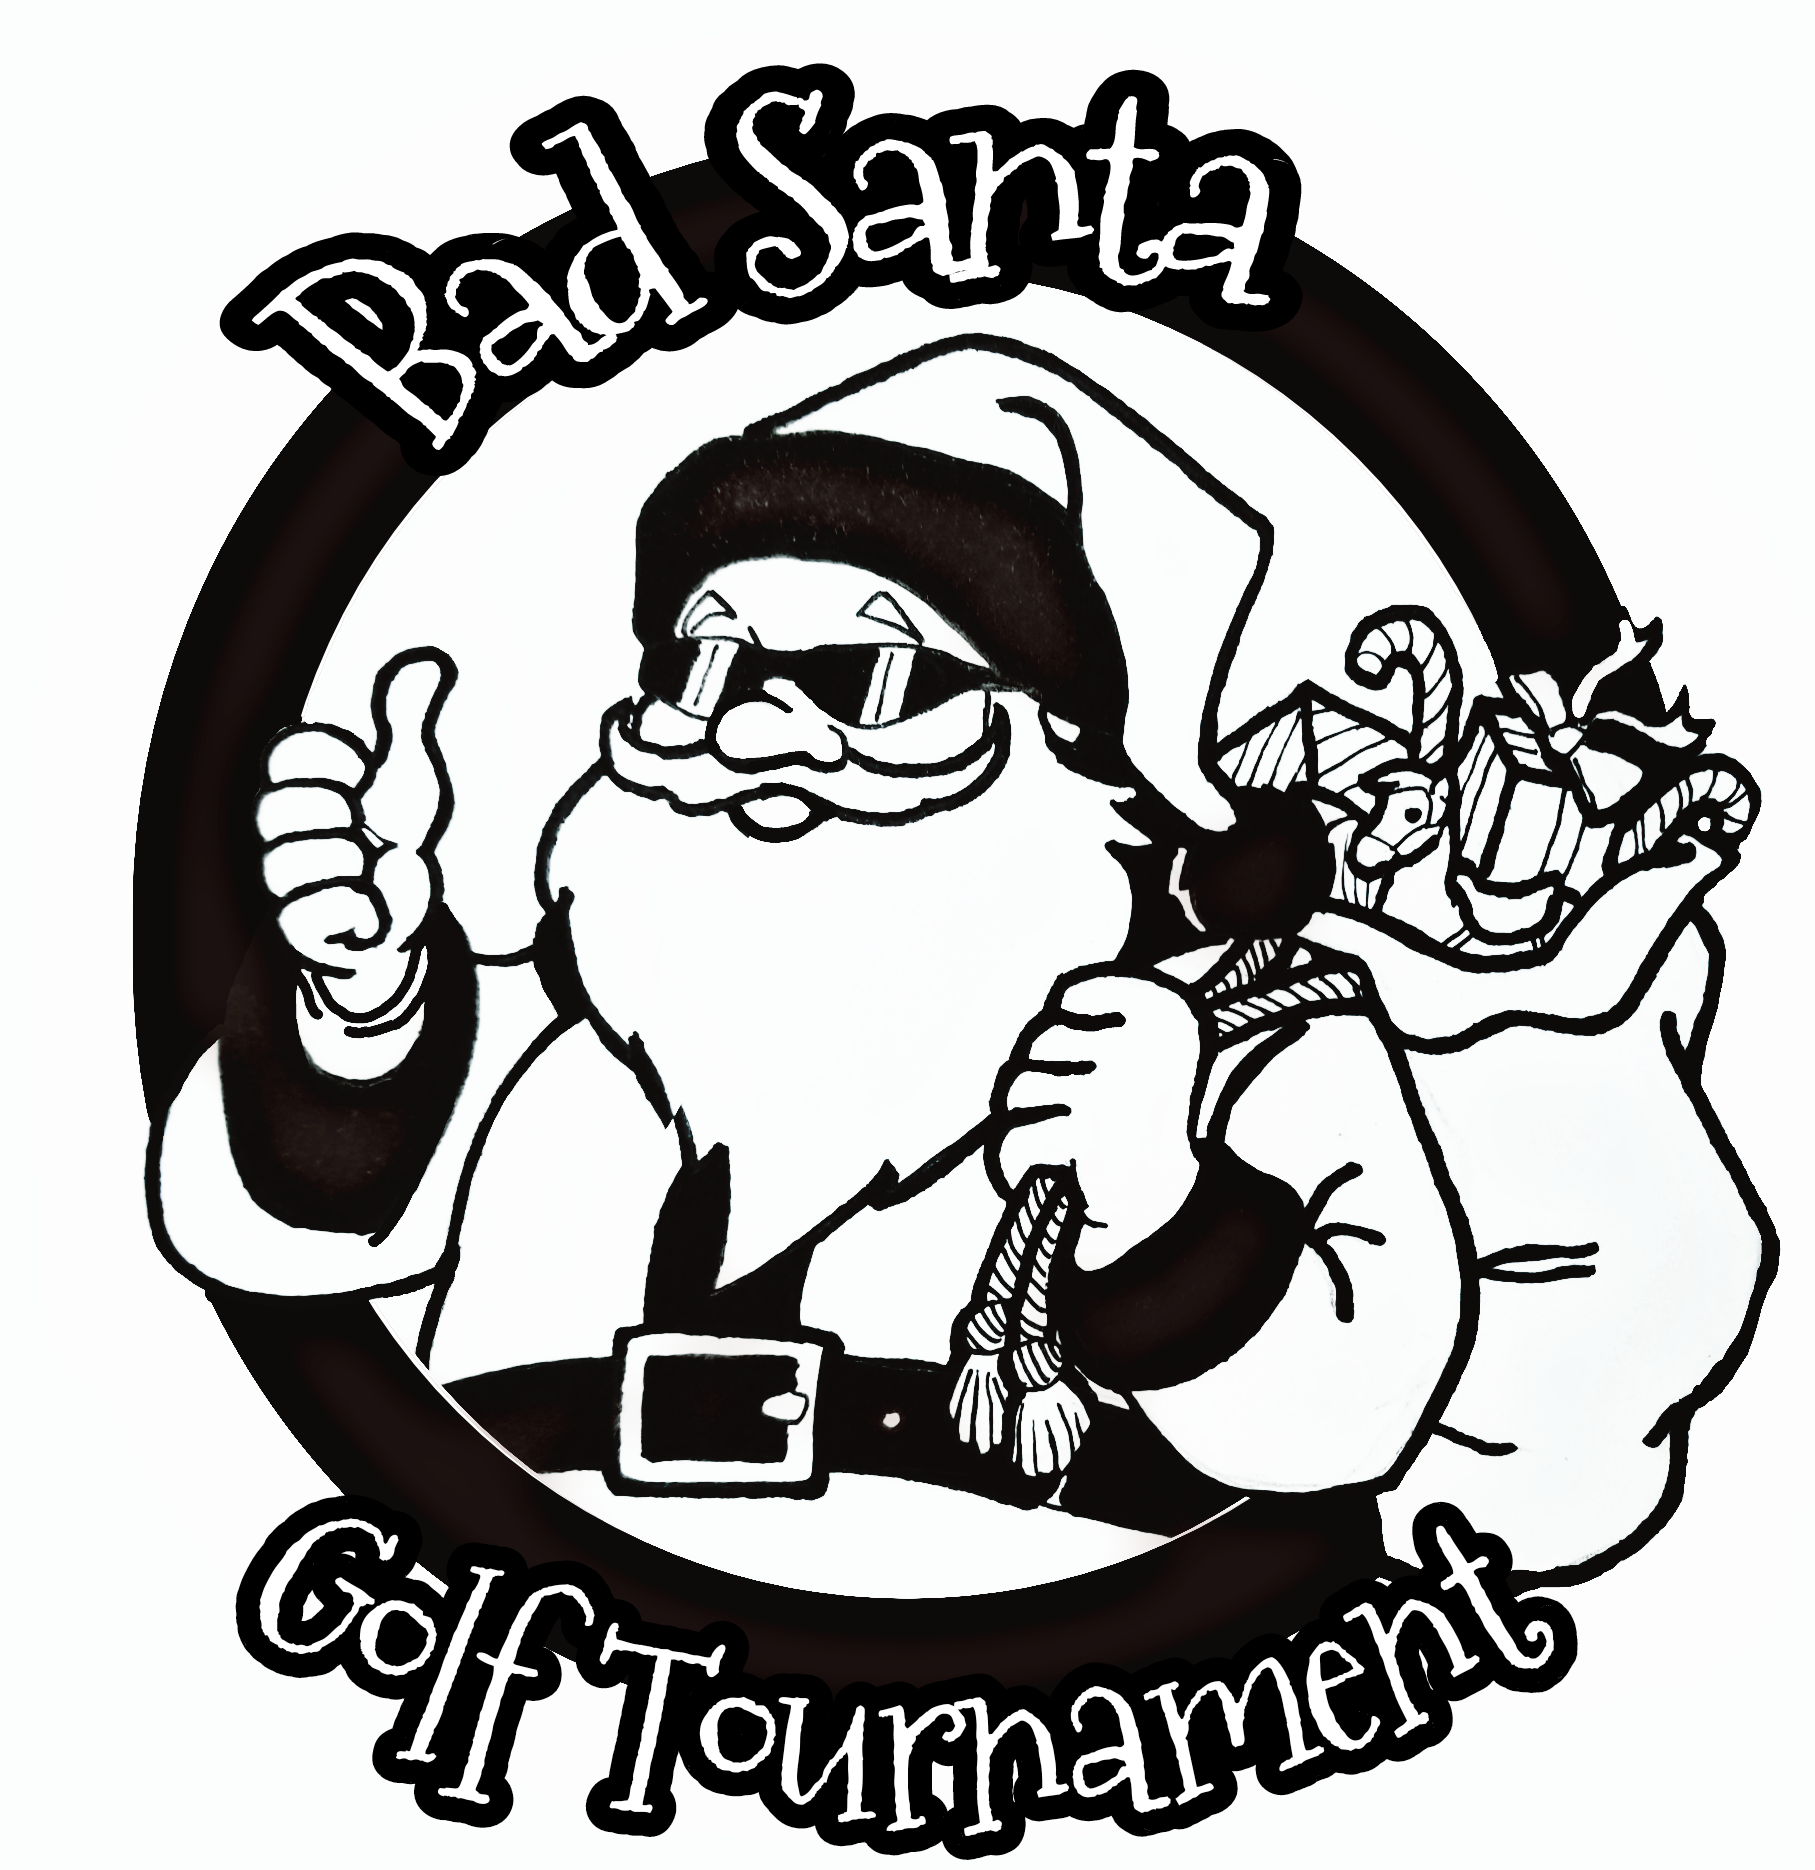 10th Annual Bad Santa Golf Tournament